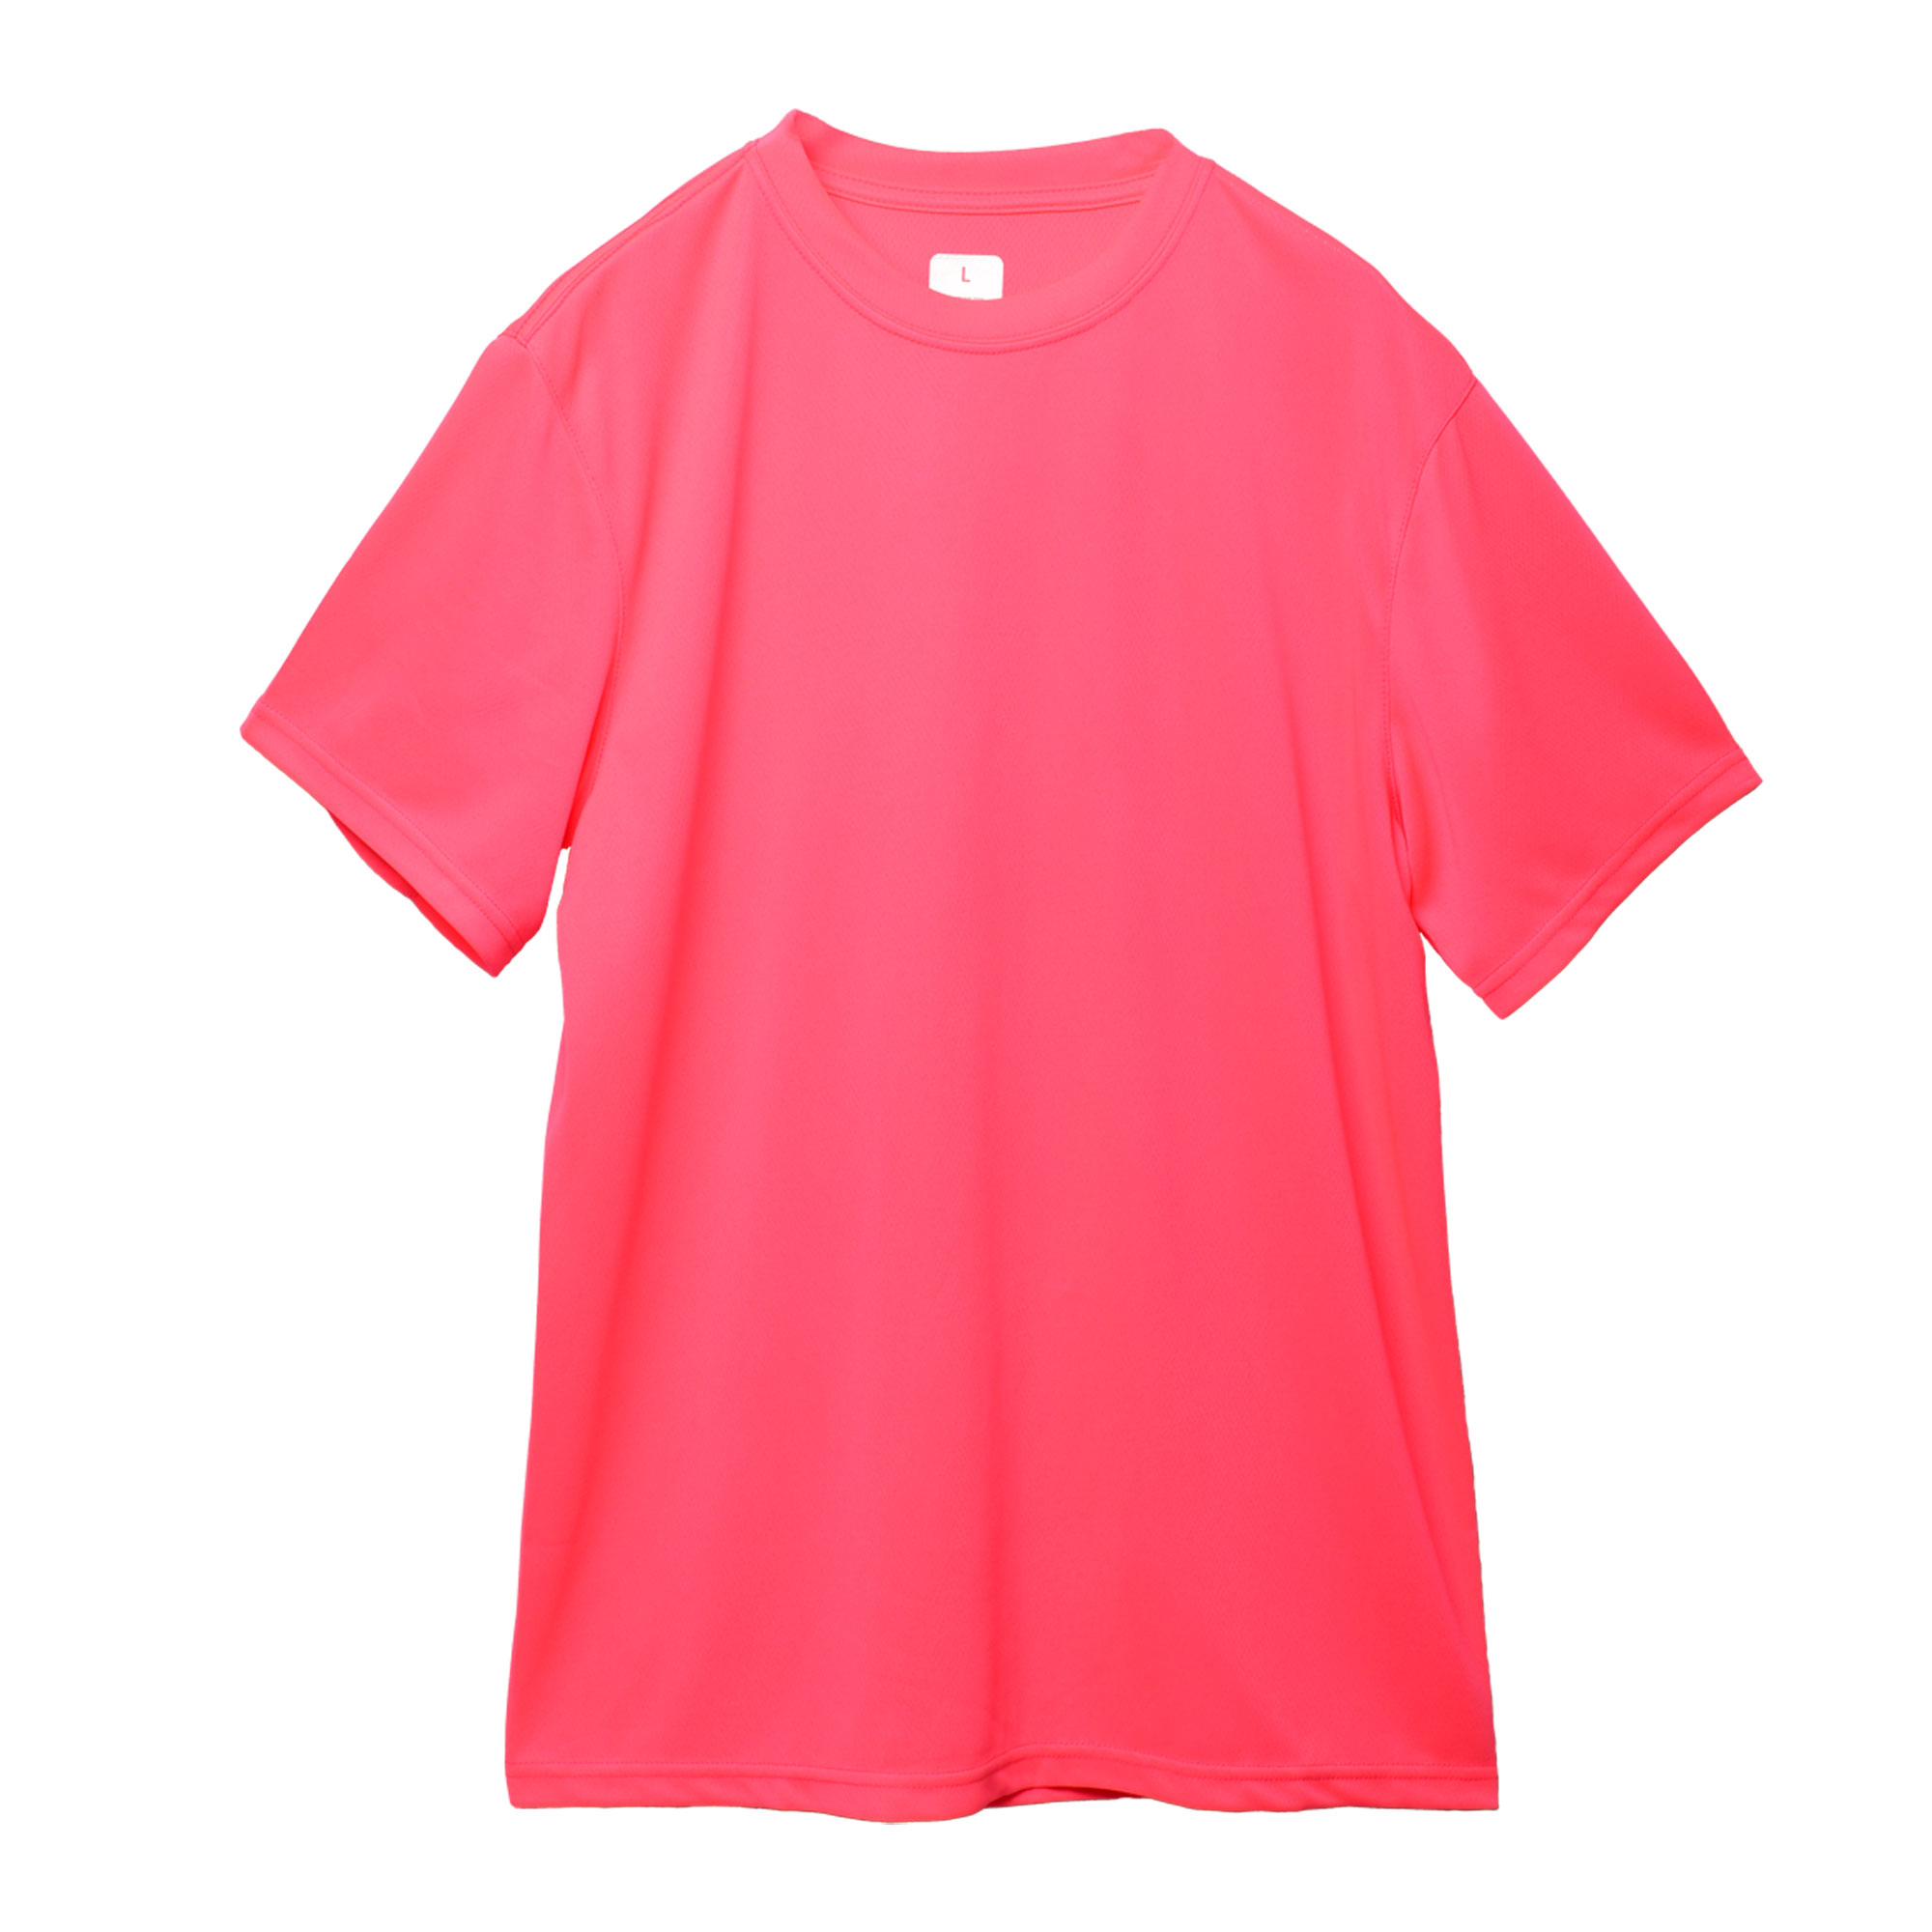 ウエア メンズ オリジナルランニングTシャツ 黒 レッド 赤 青 ピンク スポールウエア 半袖